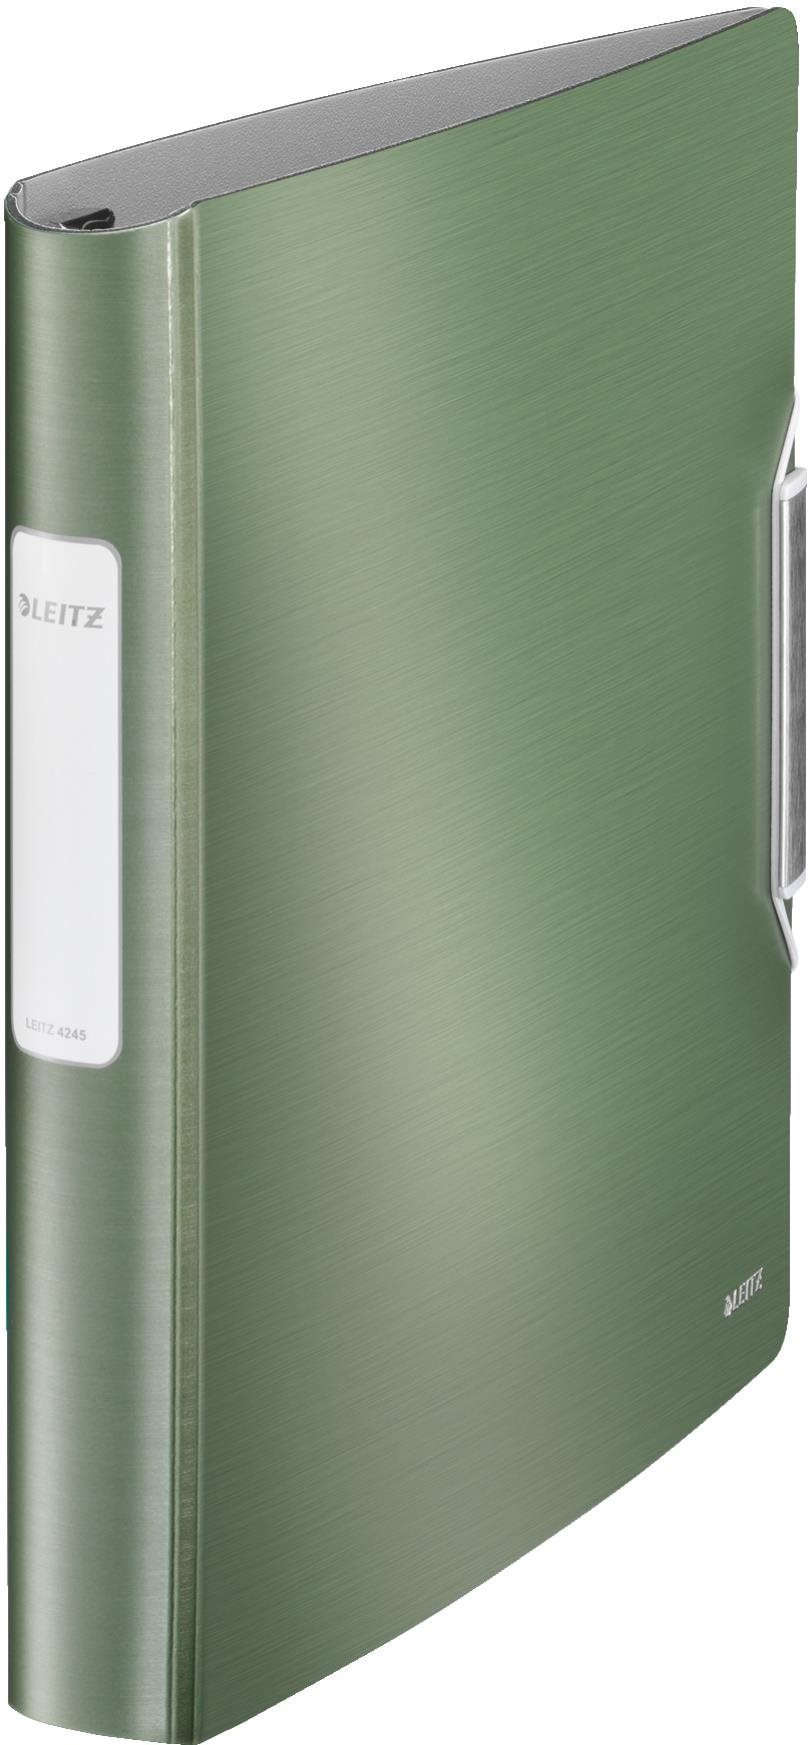 Leitz Active STYLE A4 négygyűrűs, 30 mm-es, zöld színű